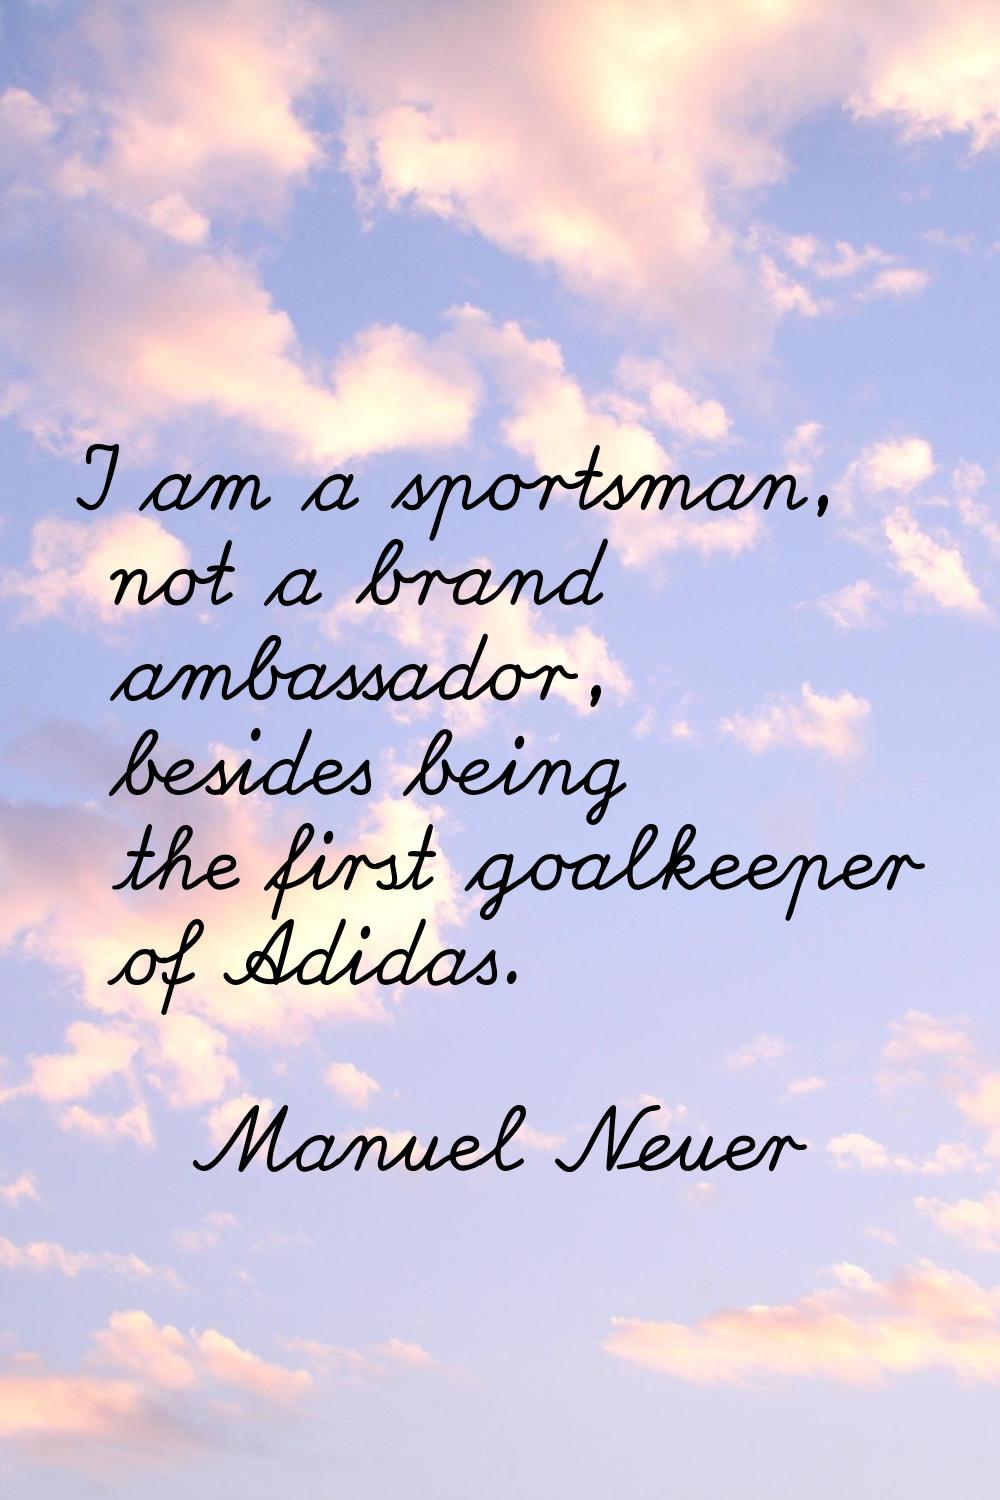 I am a sportsman, not a brand ambassador, besides being the first goalkeeper of Adidas.